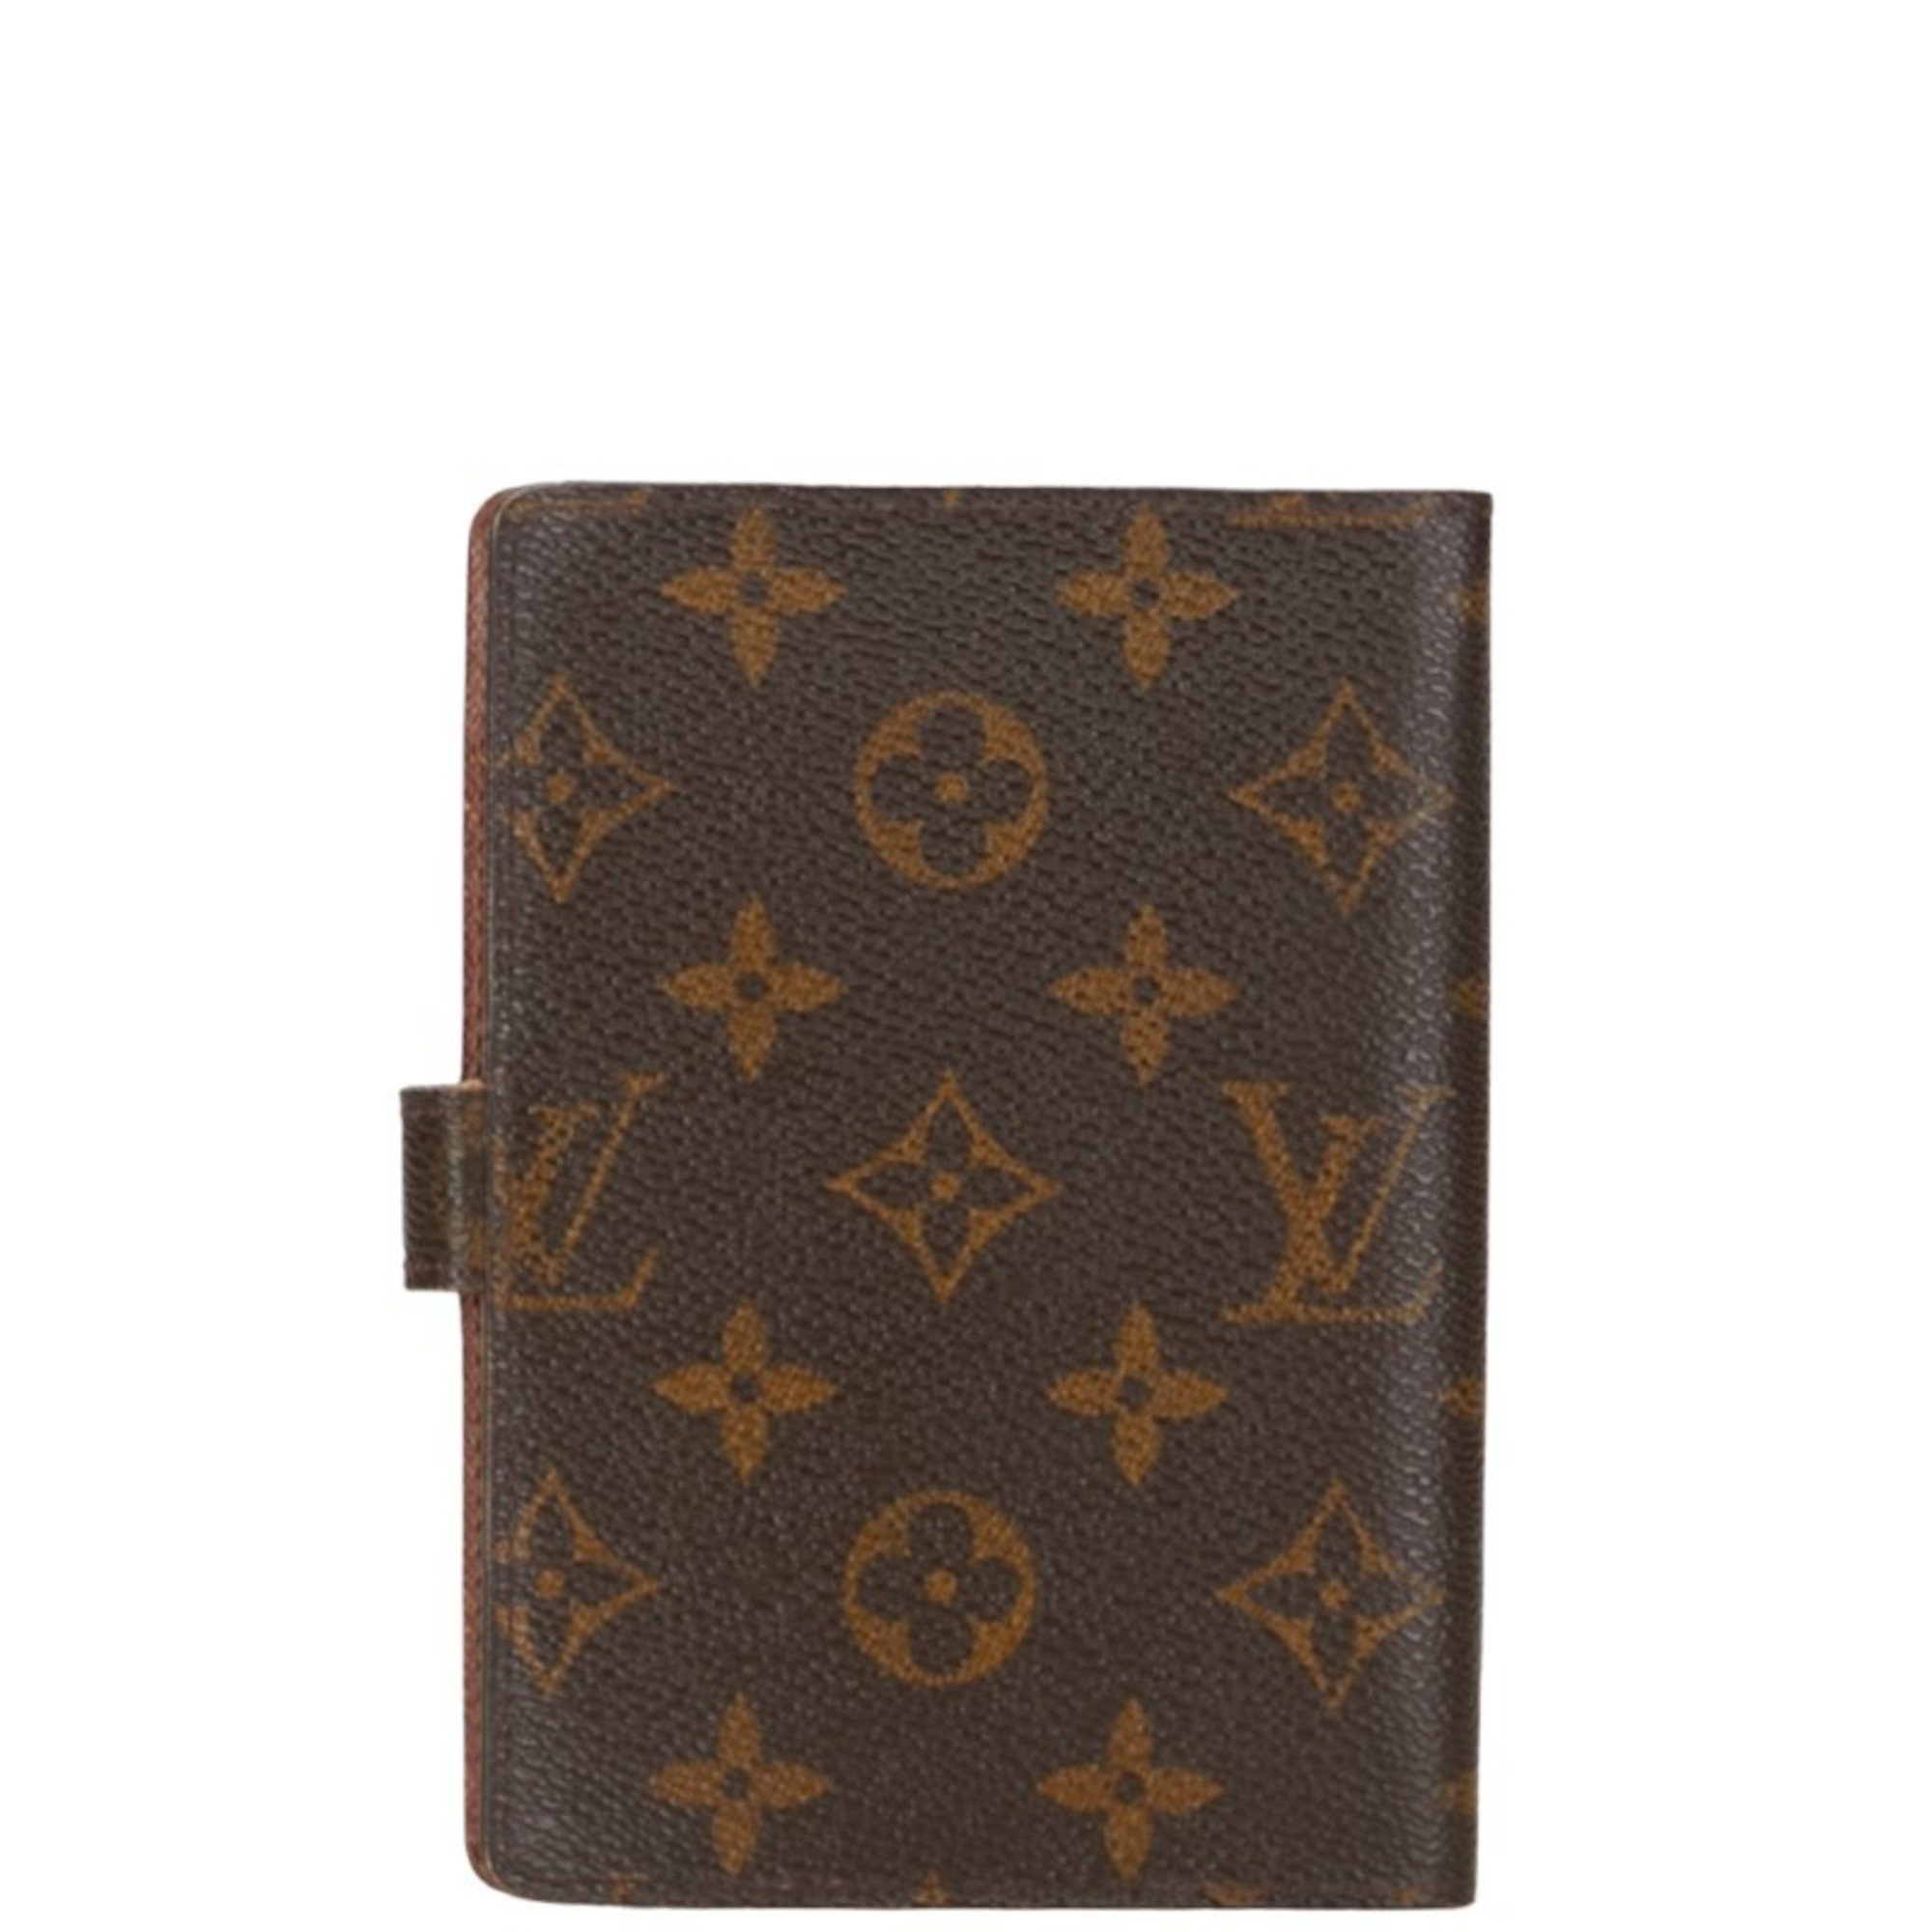 Louis Vuitton Monogram Agenda PM Notebook Cover 6 Holes R20005 Brown PVC Leather Women's LOUIS VUITTON